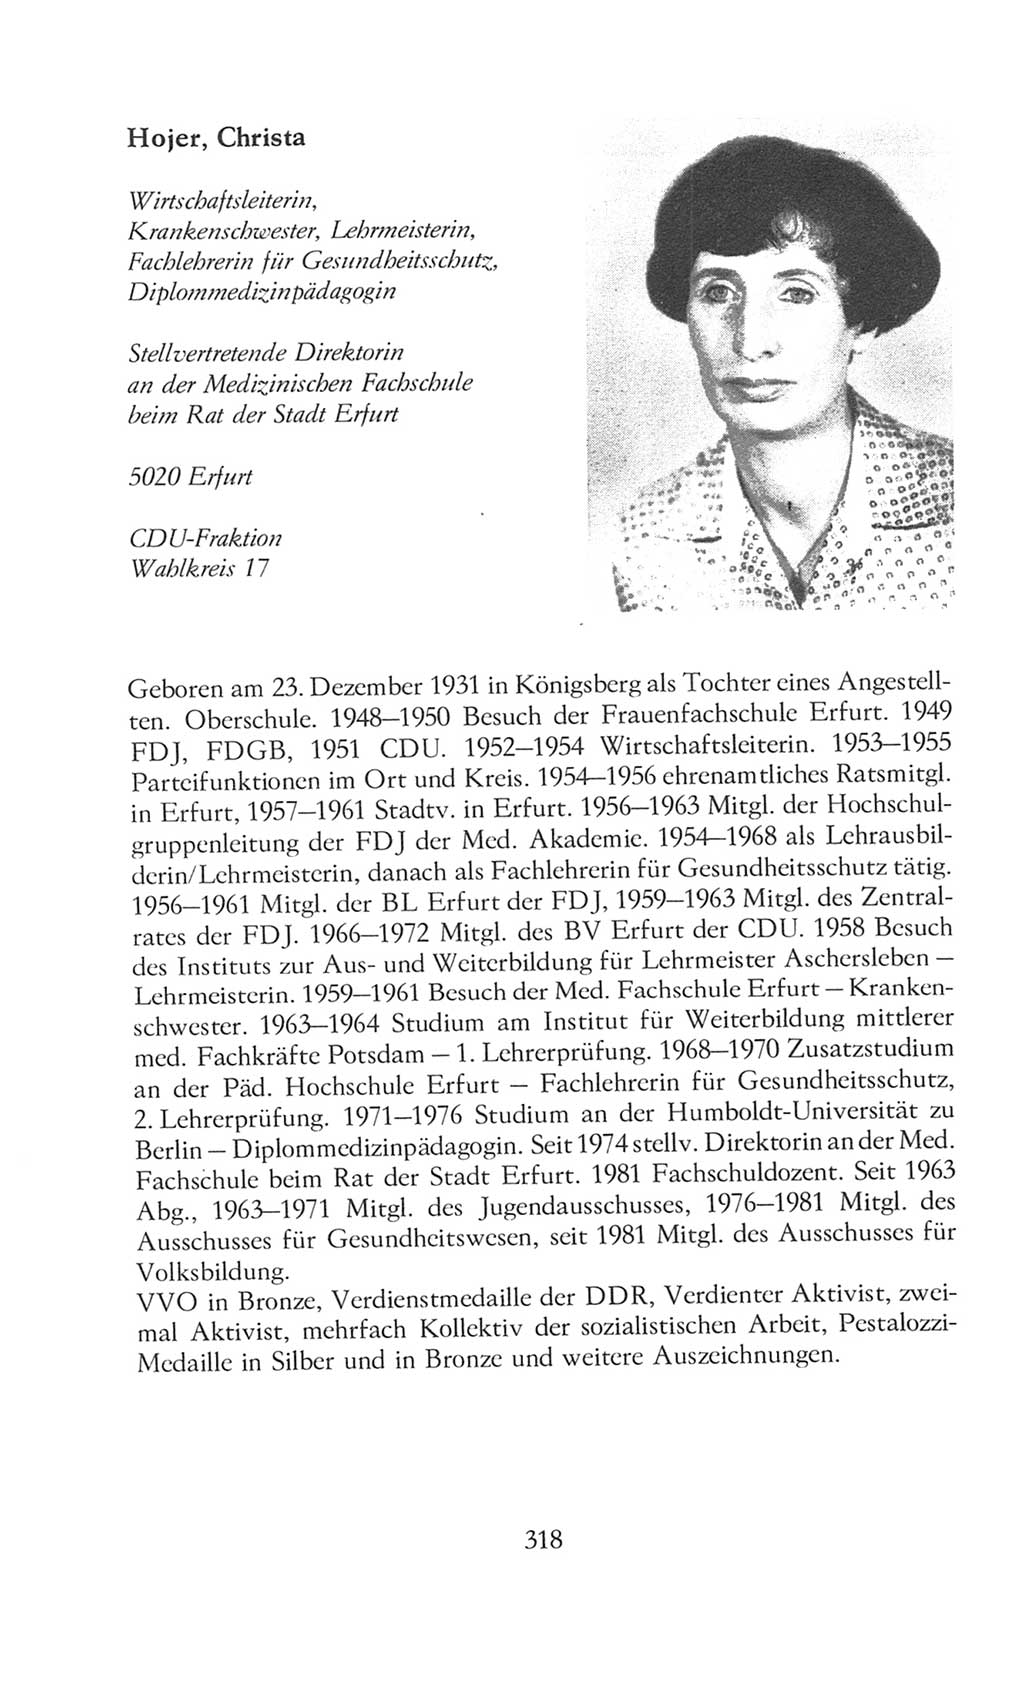 Volkskammer (VK) der Deutschen Demokratischen Republik (DDR), 8. Wahlperiode 1981-1986, Seite 318 (VK. DDR 8. WP. 1981-1986, S. 318)